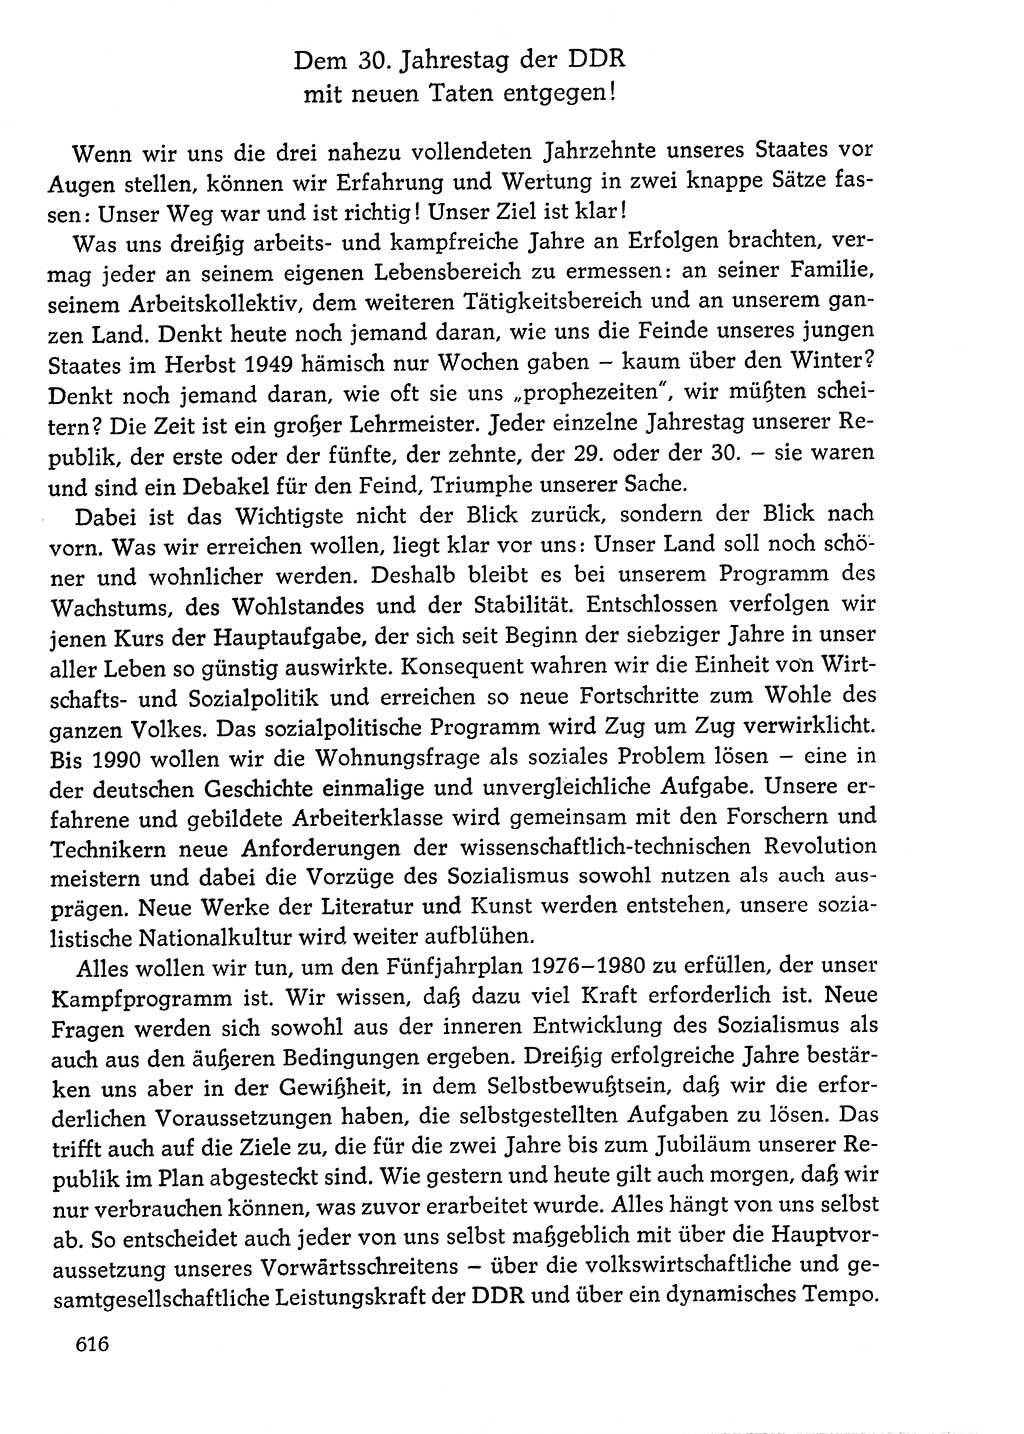 Dokumente der Sozialistischen Einheitspartei Deutschlands (SED) [Deutsche Demokratische Republik (DDR)] 1976-1977, Seite 616 (Dok. SED DDR 1976-1977, S. 616)